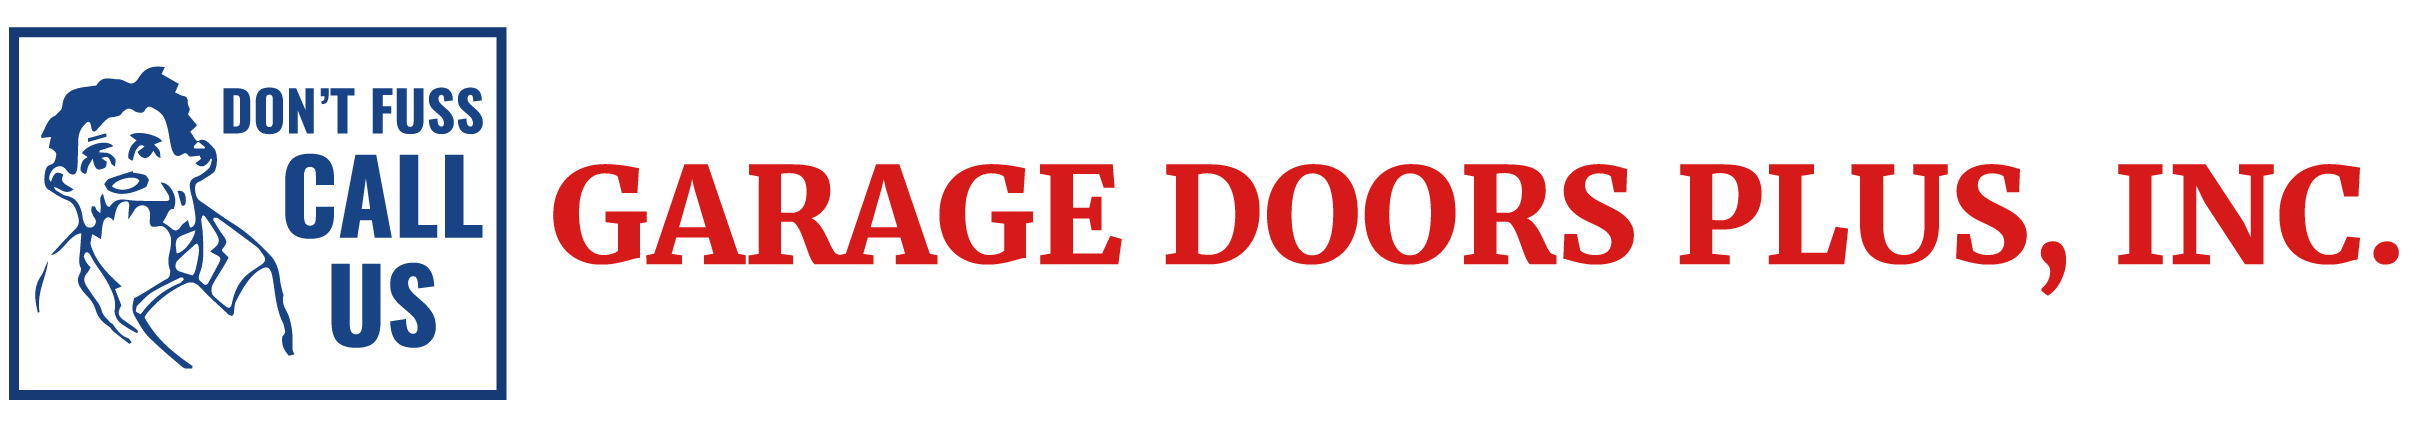 Garage Door Repair & Installation of Minnesota | Garage Doors Plus, Inc.